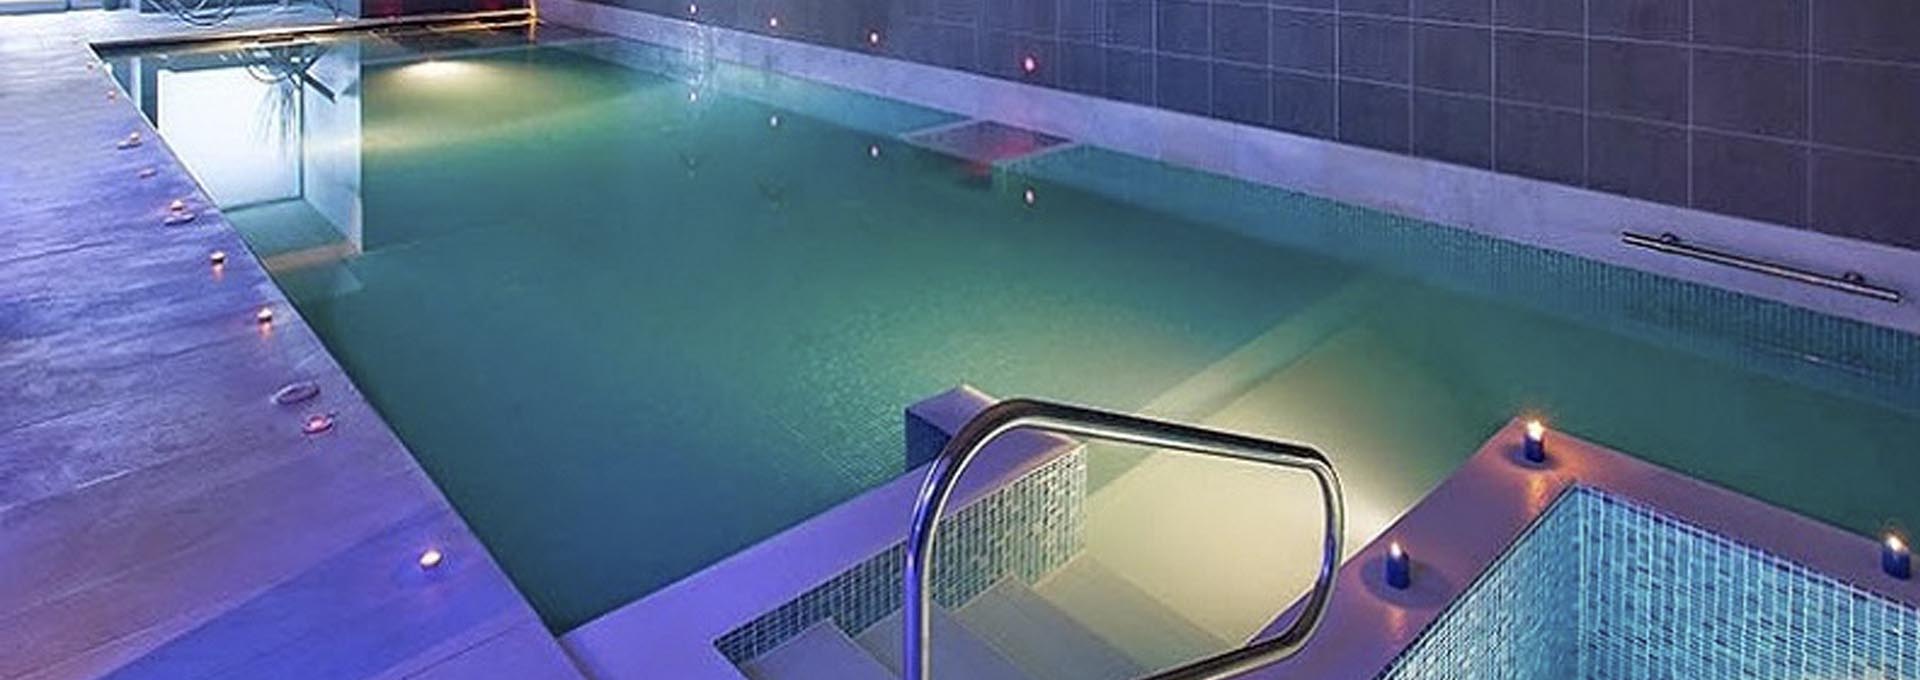 Balneario Areatza piscina